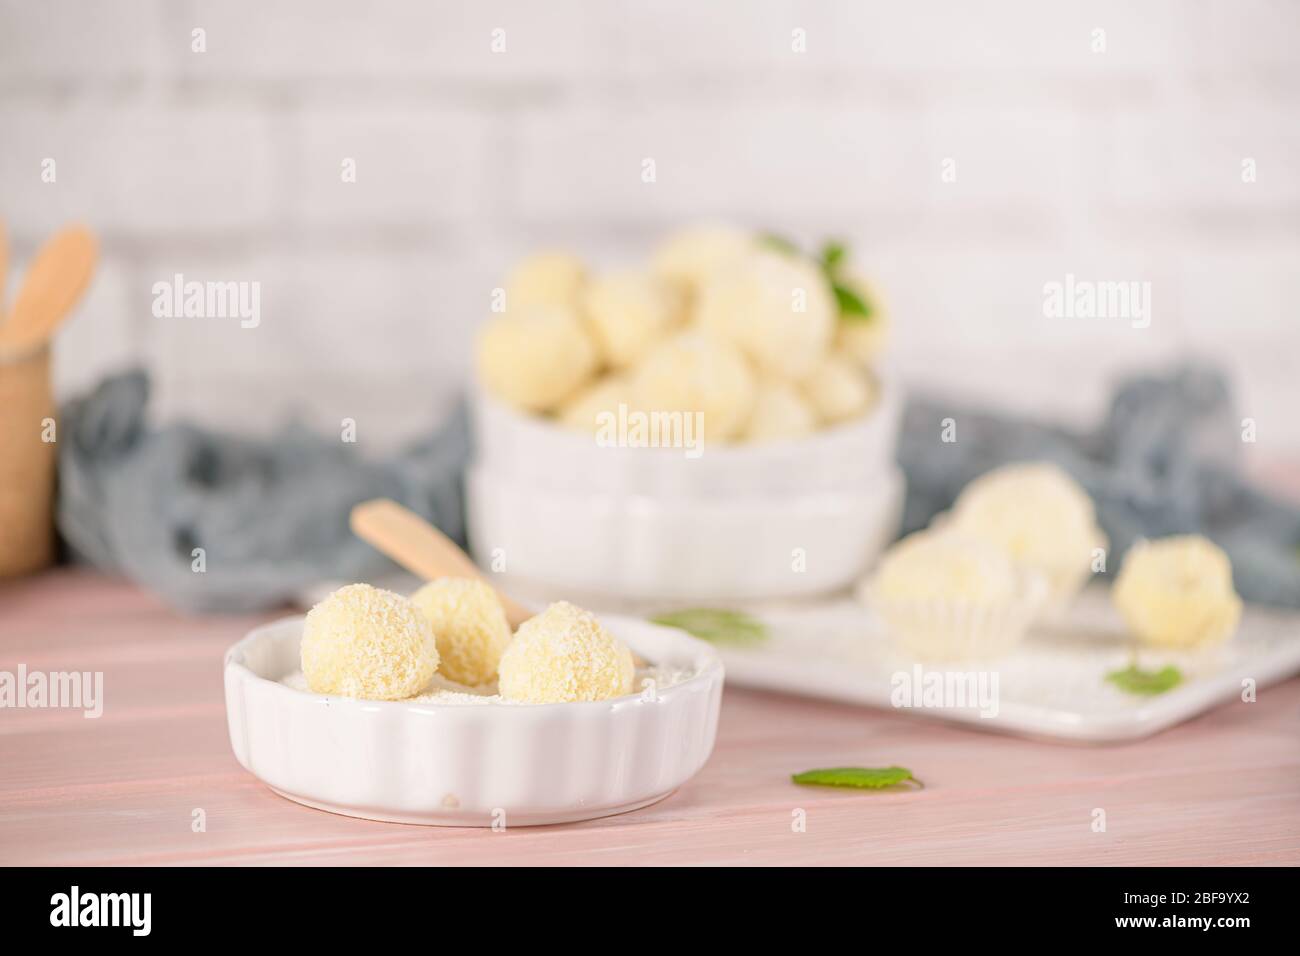 Caramelle fatte in casa con mandorle arrosto al cocco su un tavolo di legno rosa. Foto Stock